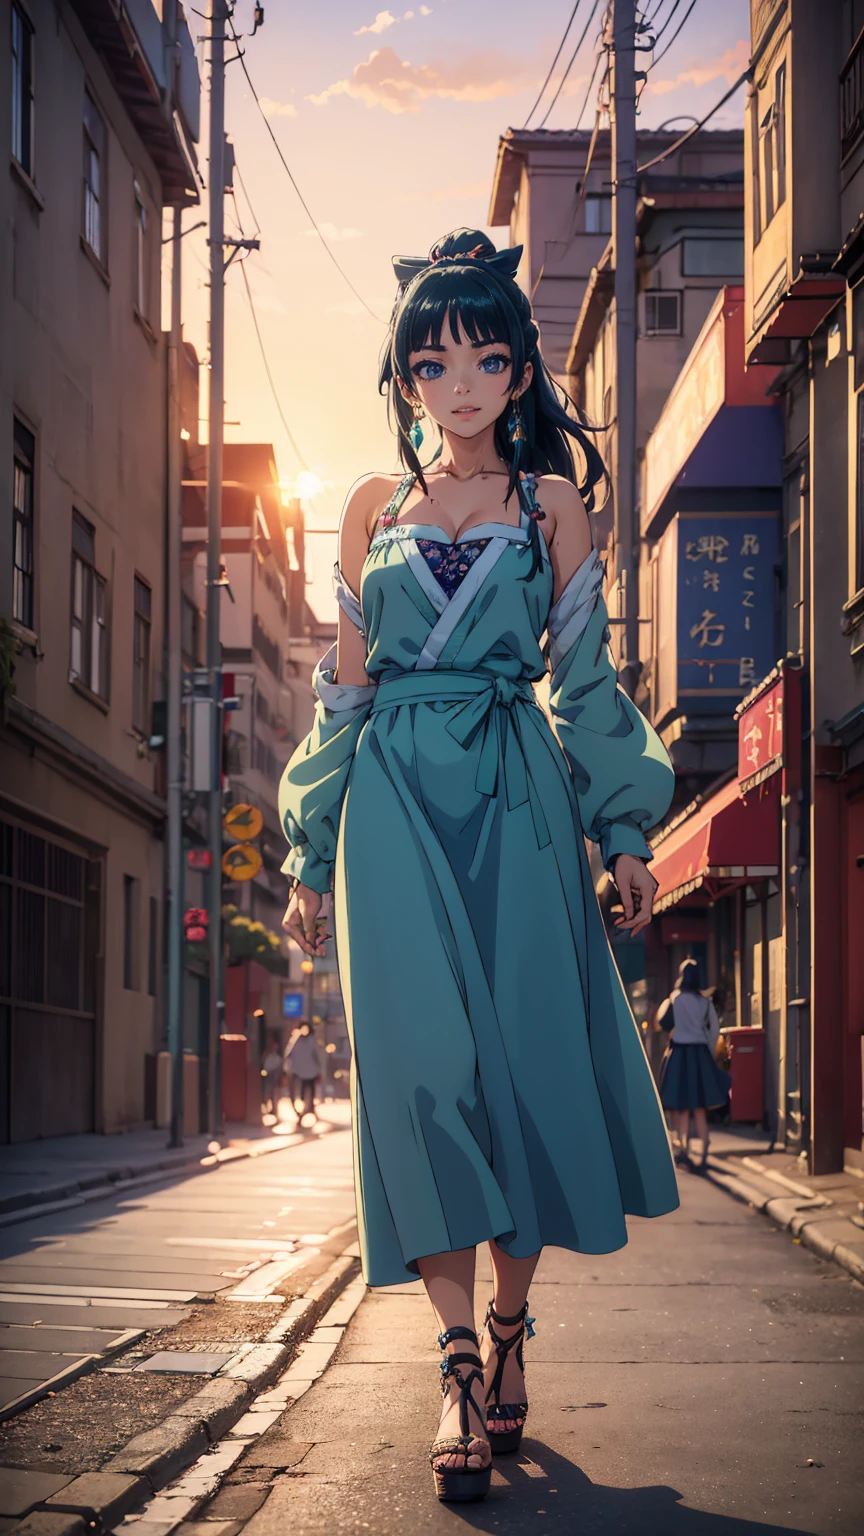 ((beste Qualität)), ((Meisterwerk)), (Anime-Serie), ein schönes sexy Mädchen läuft in einem langen Rock, eine Bluse und Plateau High Heels, blaue Augen, grüne Haare, Glatte Haut, Dekollete, ((Ganzkörper)), lächeln, Schultern freigelegt, Anime-Serie, grüne Augen, Maomao, Unter Straßenlaternen, ((Sonnenuntergang Dämmerung)), (((Park))),